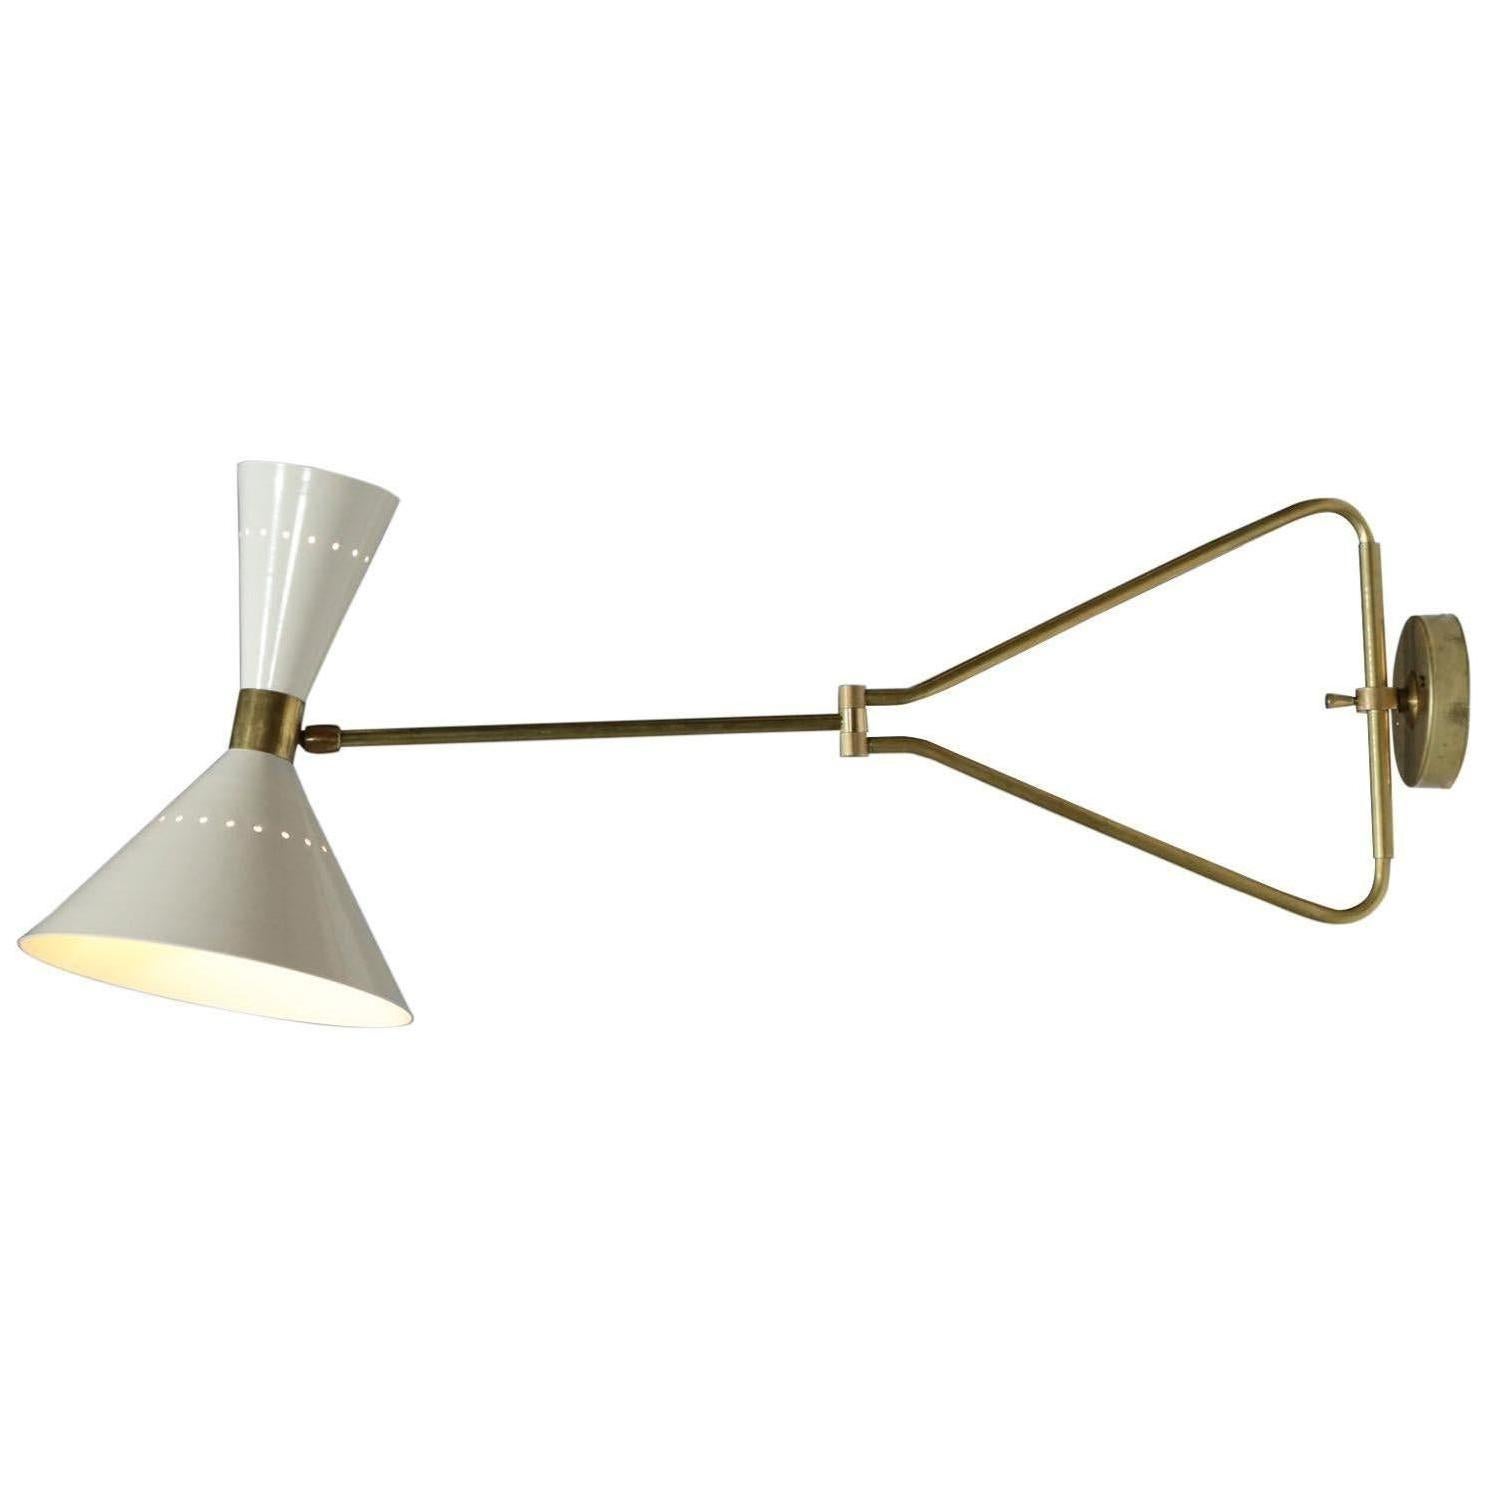 Italian Adjustable Wall Light "Perla" Beige Modern Brass For Sale